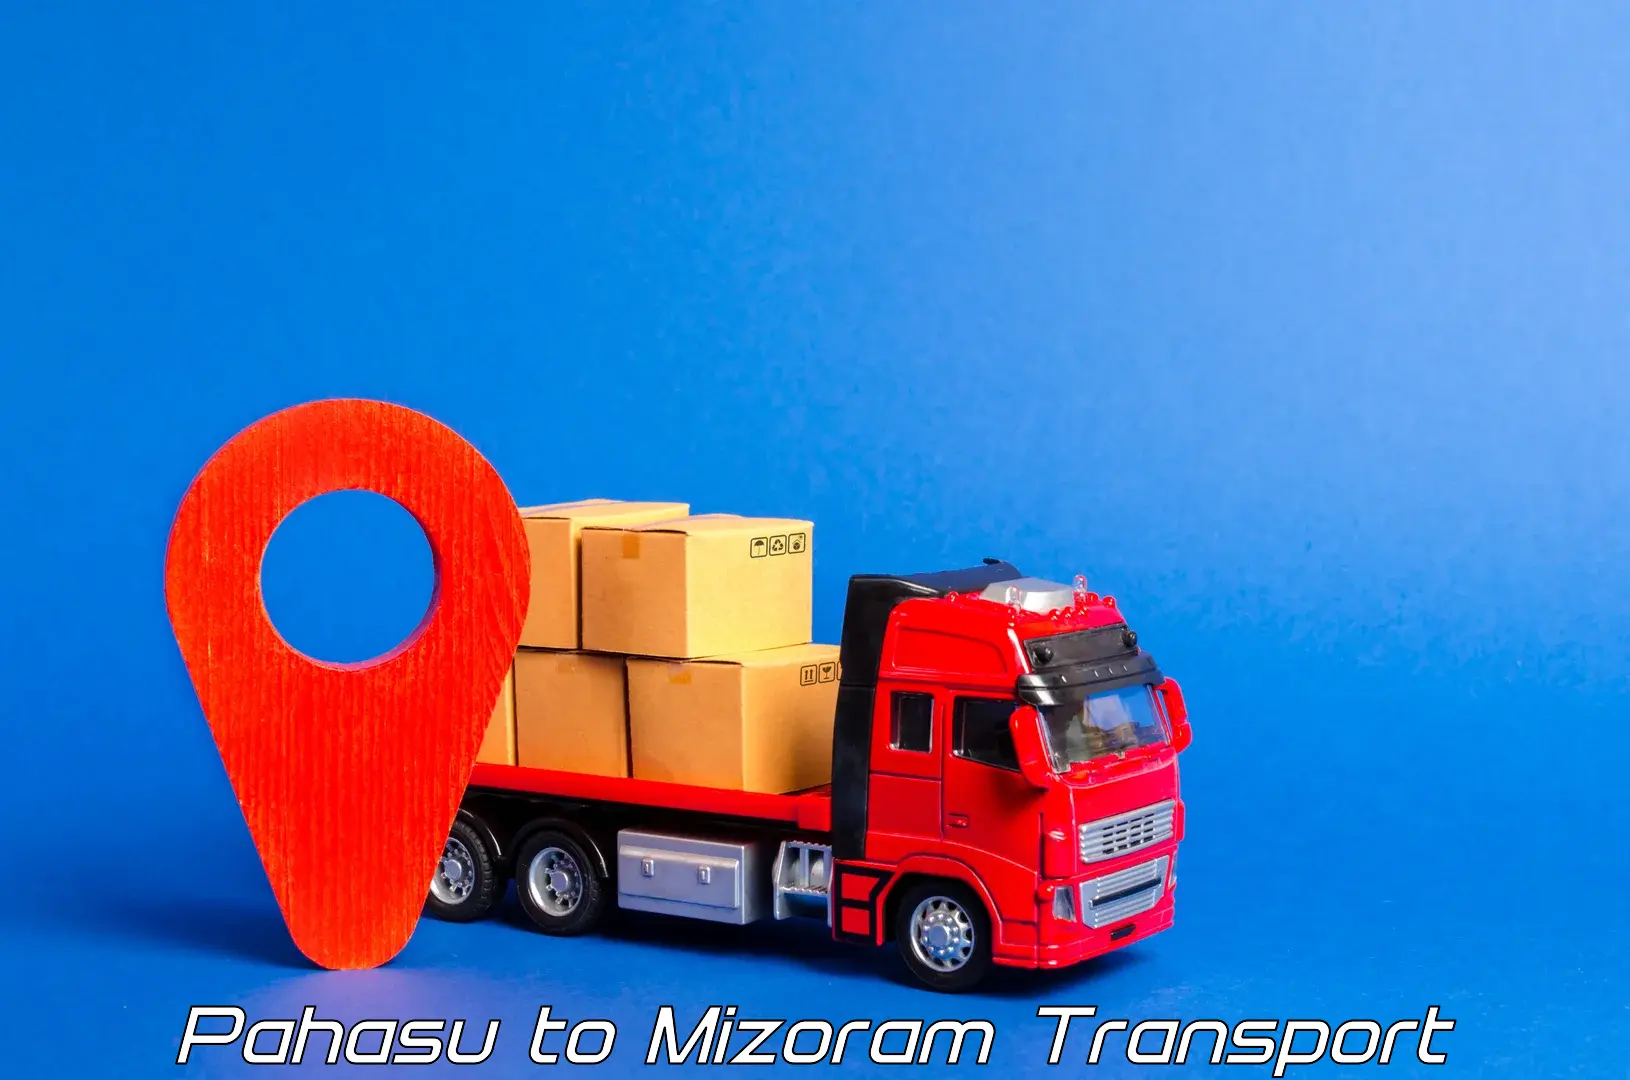 Scooty parcel in Pahasu to Mizoram